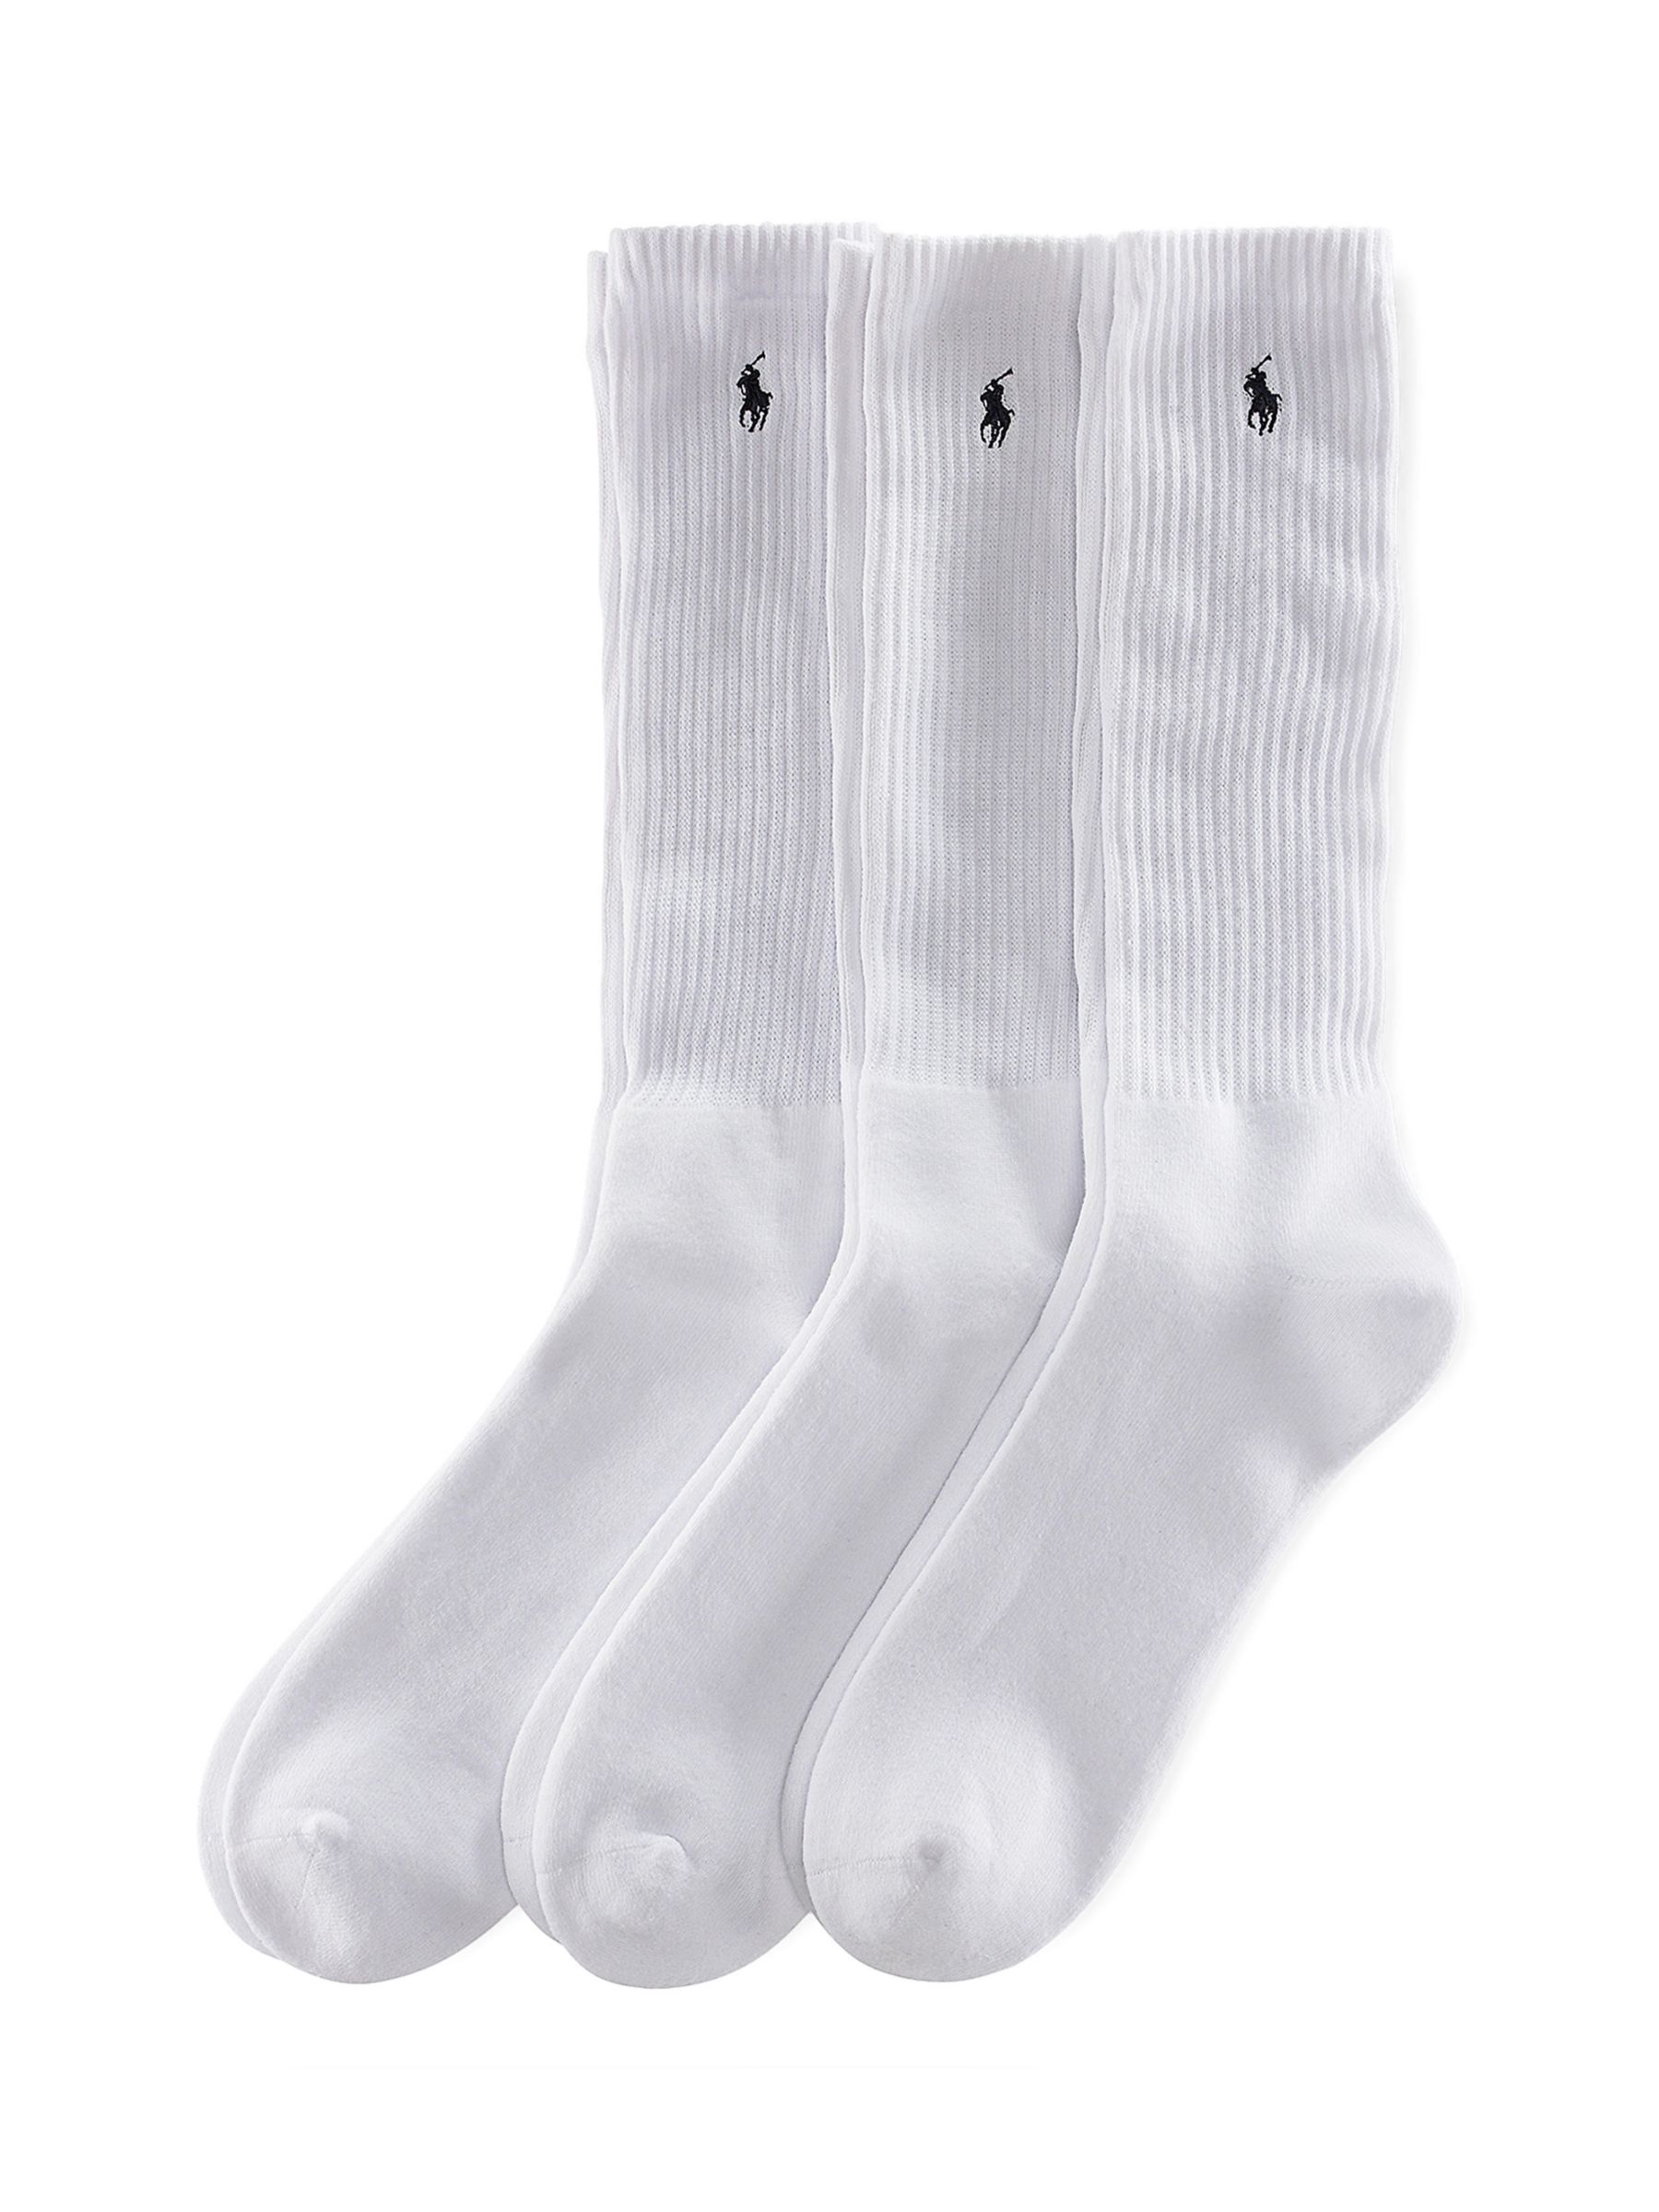 Polo Ralph Lauren Sports Socks, Pack of 